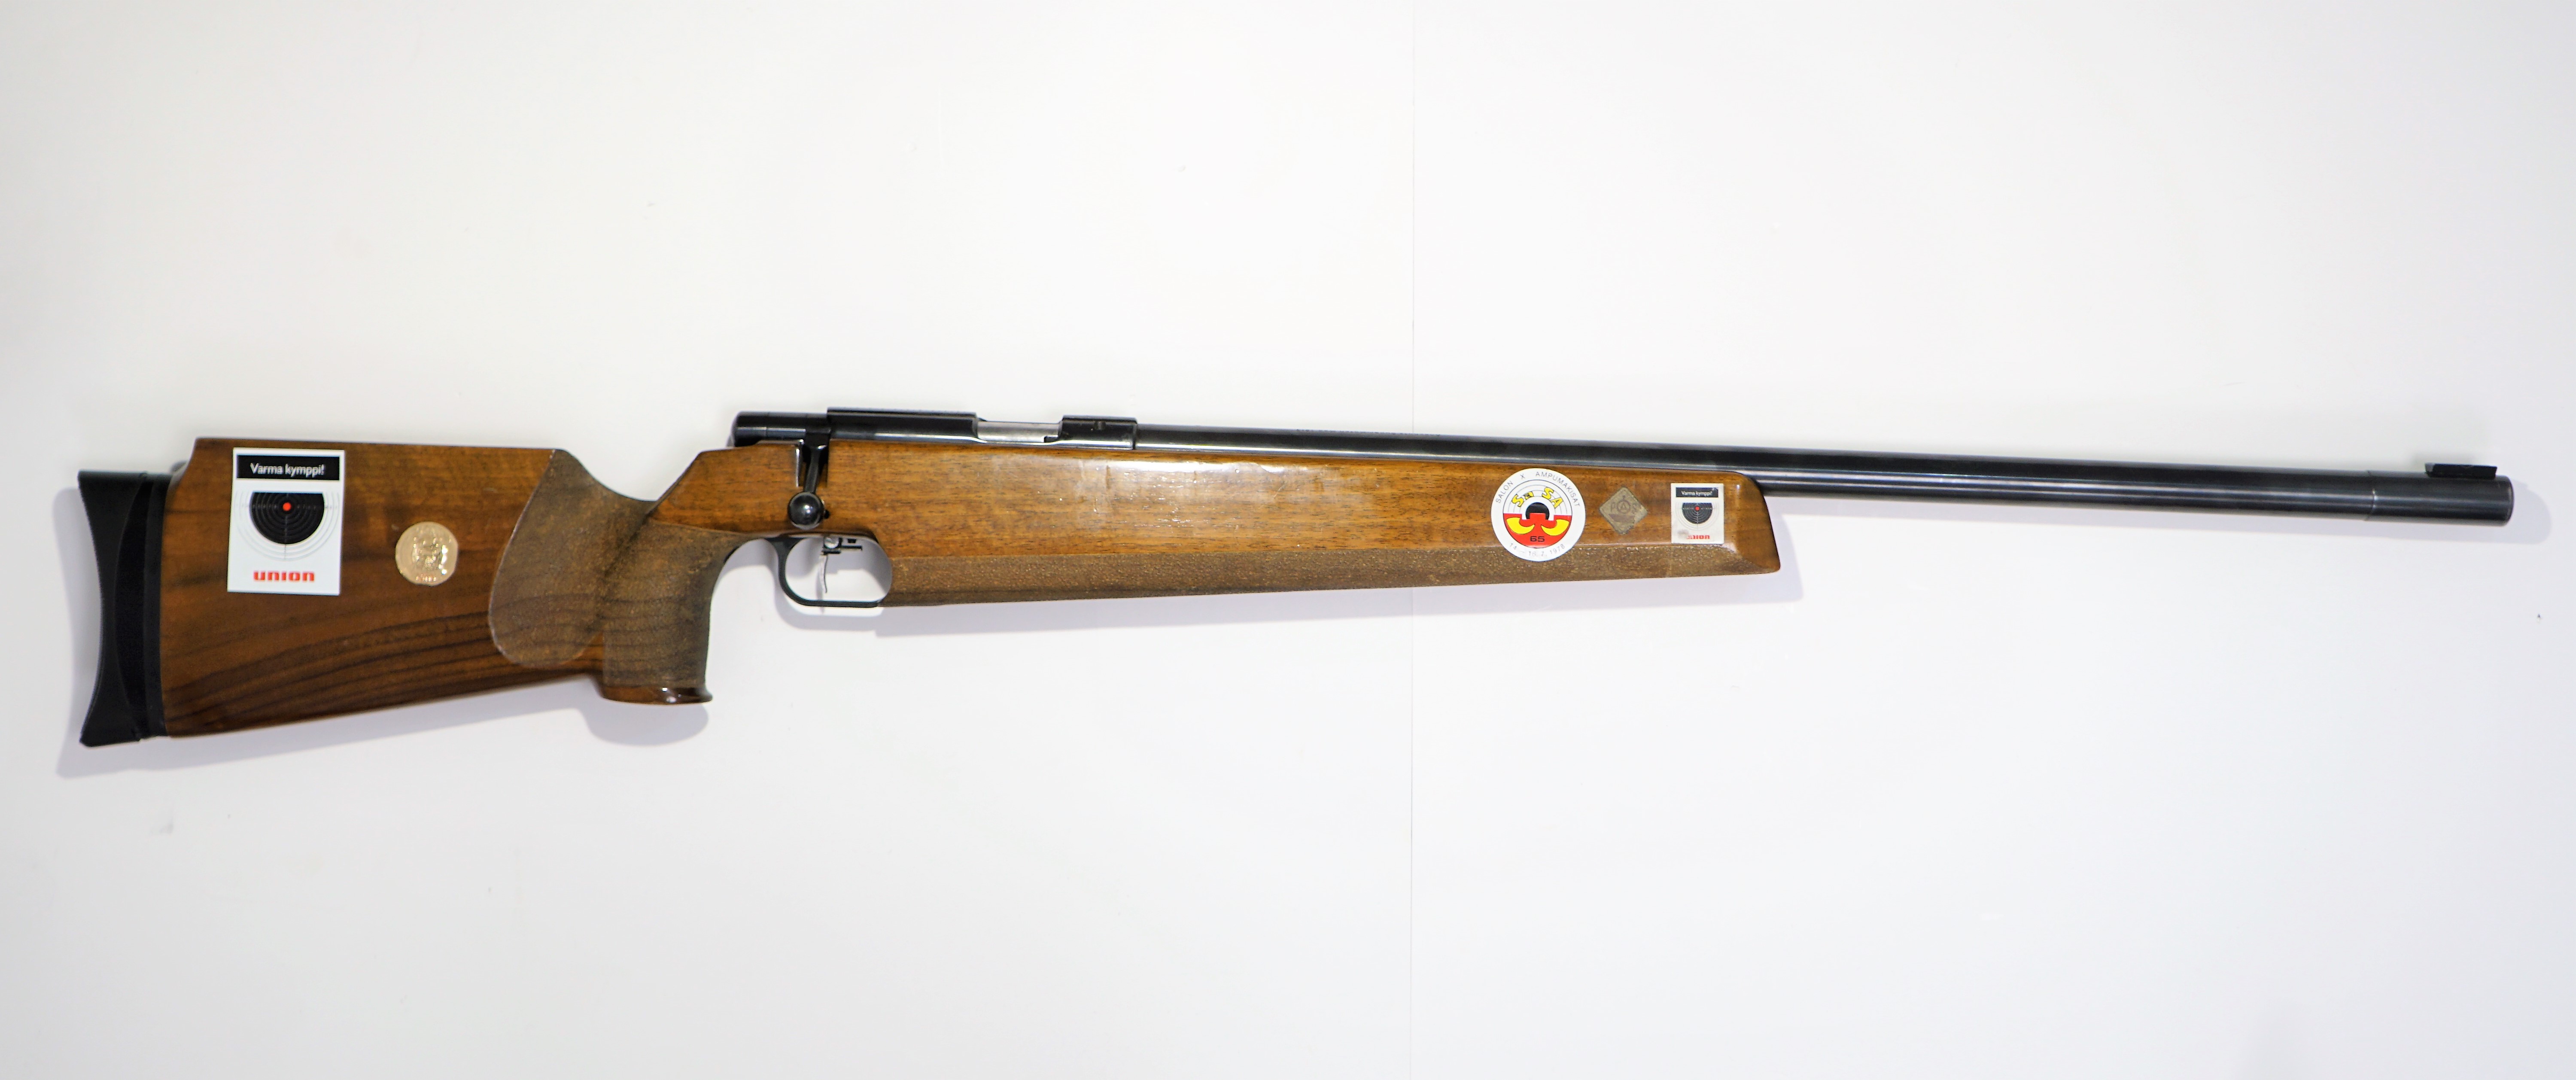 Anschutz 1813 tarkkuuspienioskivääri 22 LR, käytetty